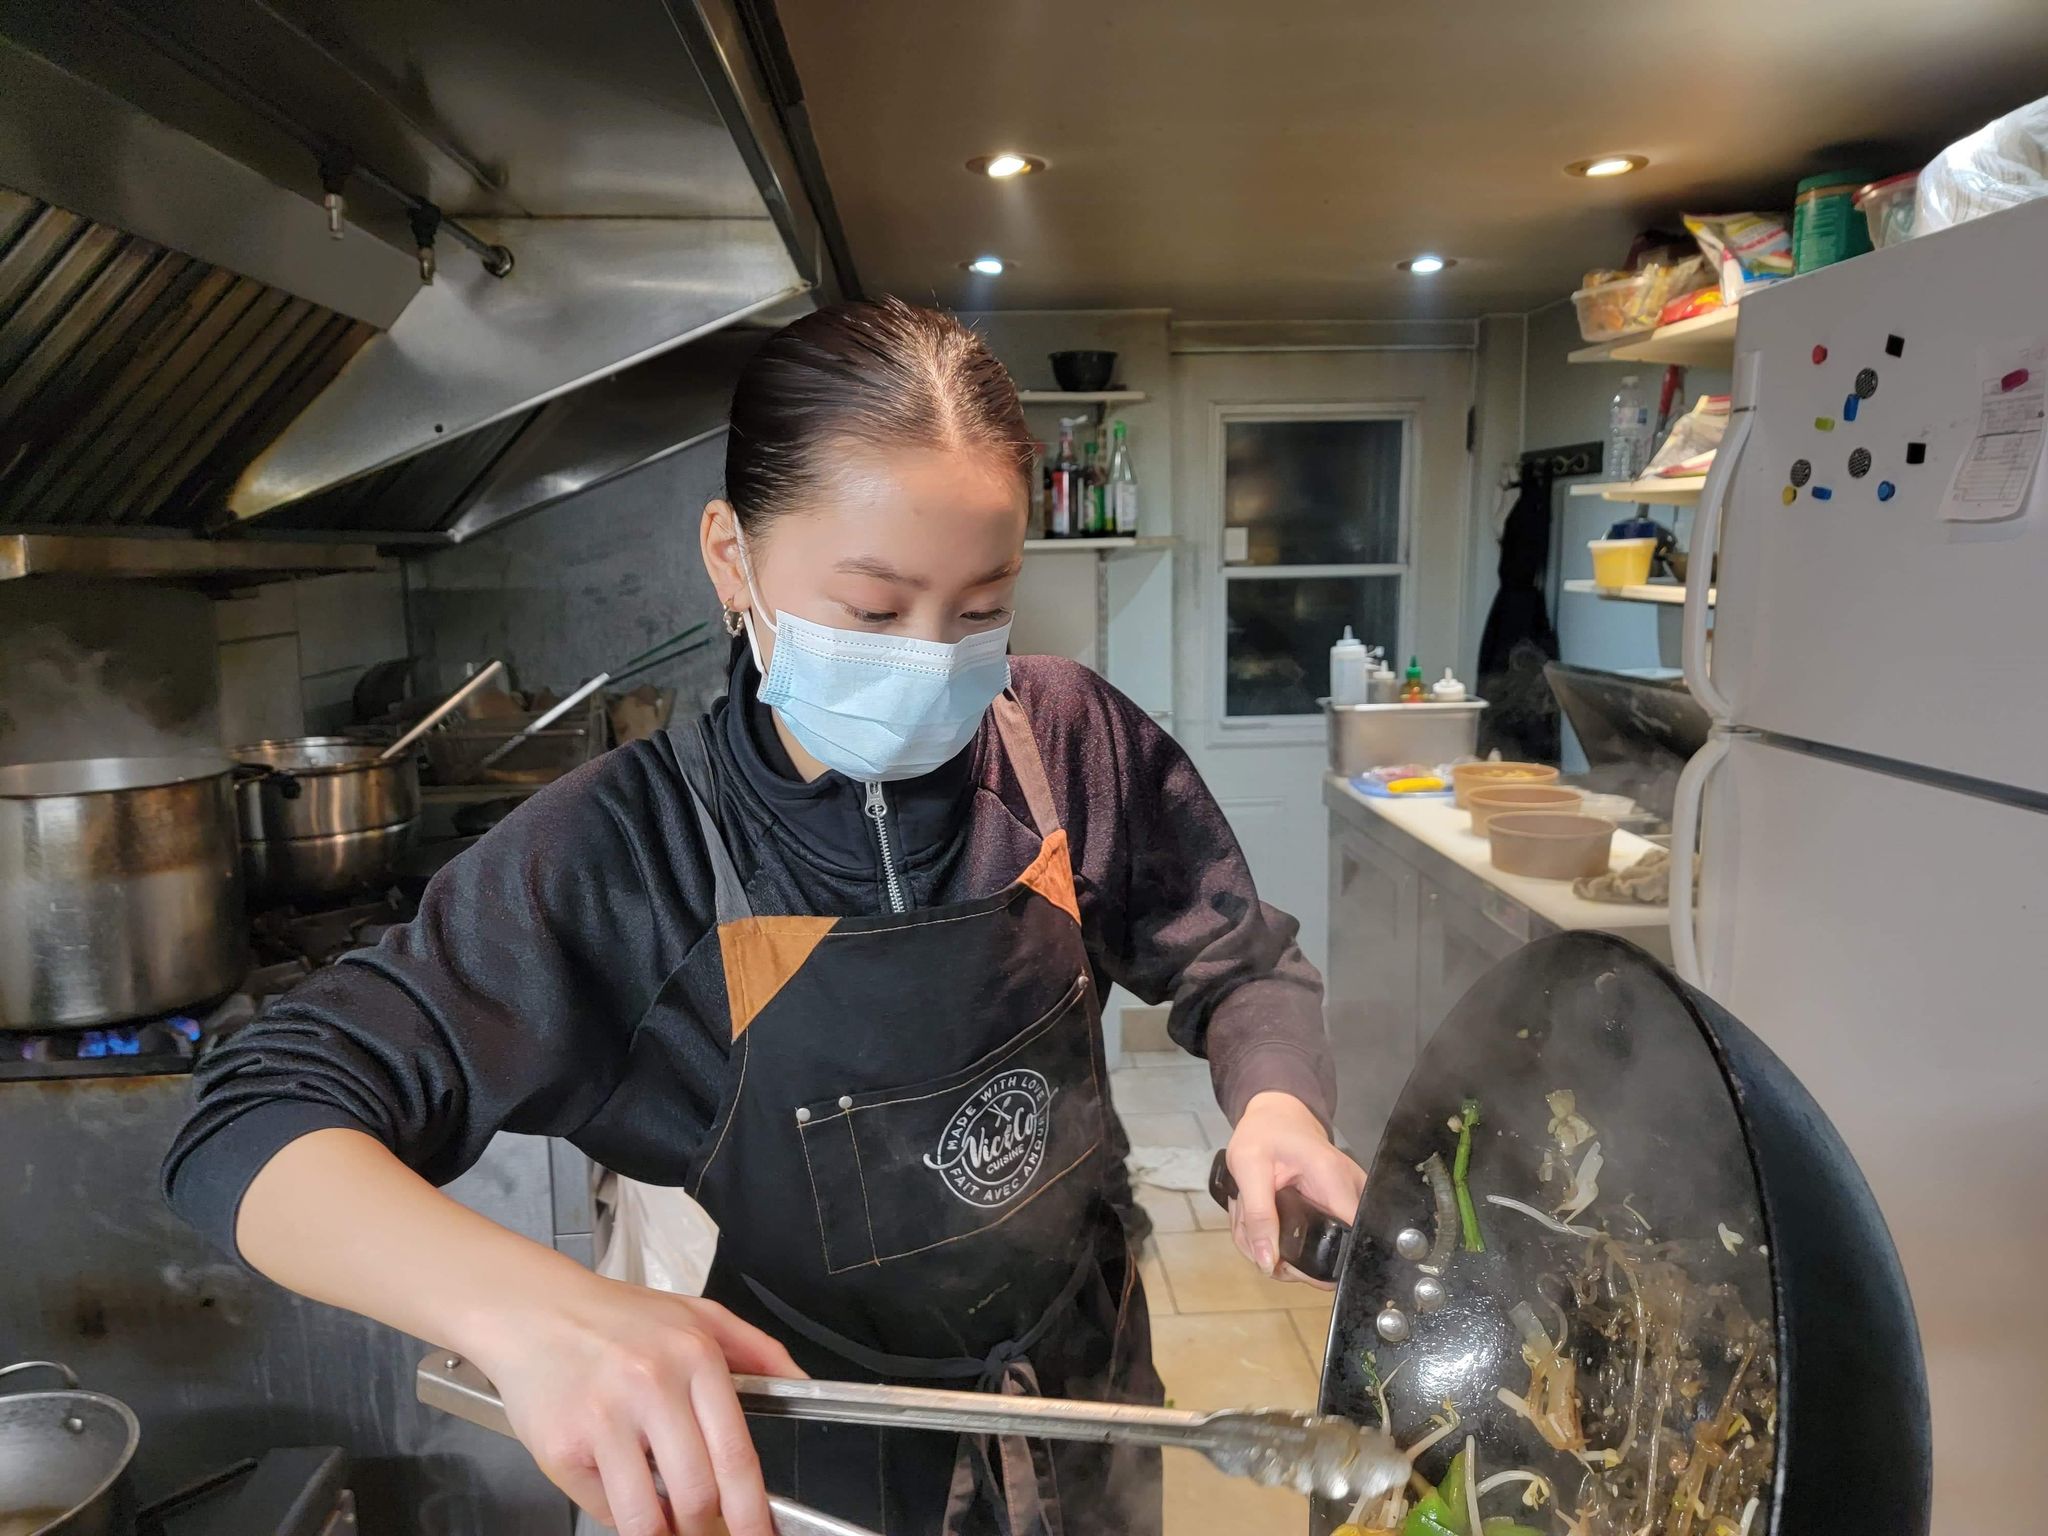 Victoria Vũ Đức: Từ đam mê nấu ăn đến làm chủ nhà hàng ở tuổi 15 - 1